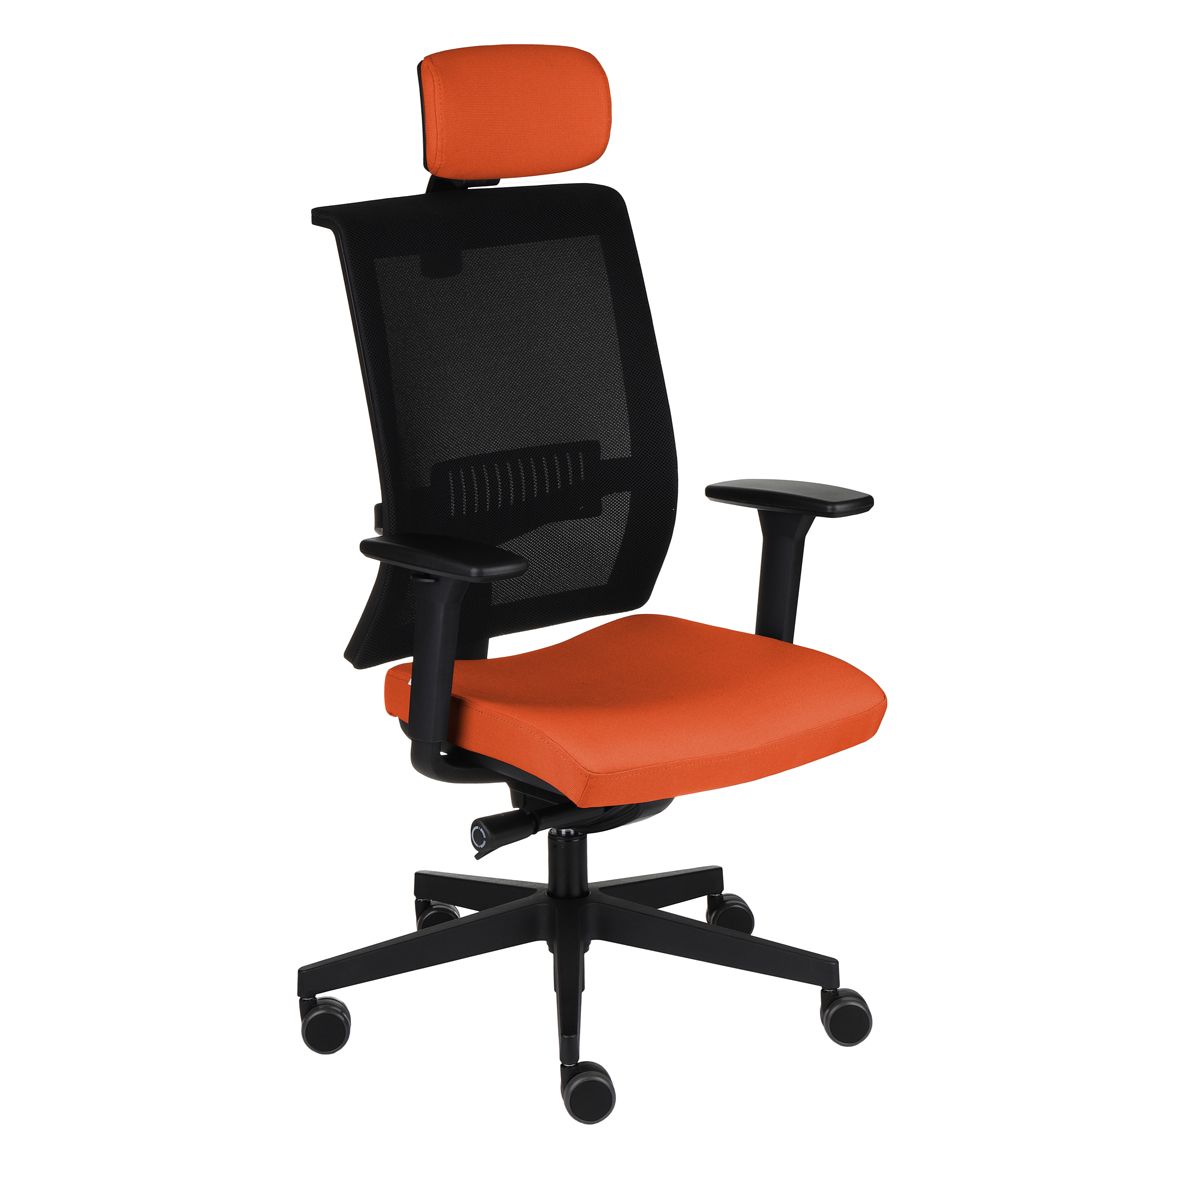 Kancelárska stolička s podrúčkami Libon BS HD - oranžová / čierna - nabbi.sk